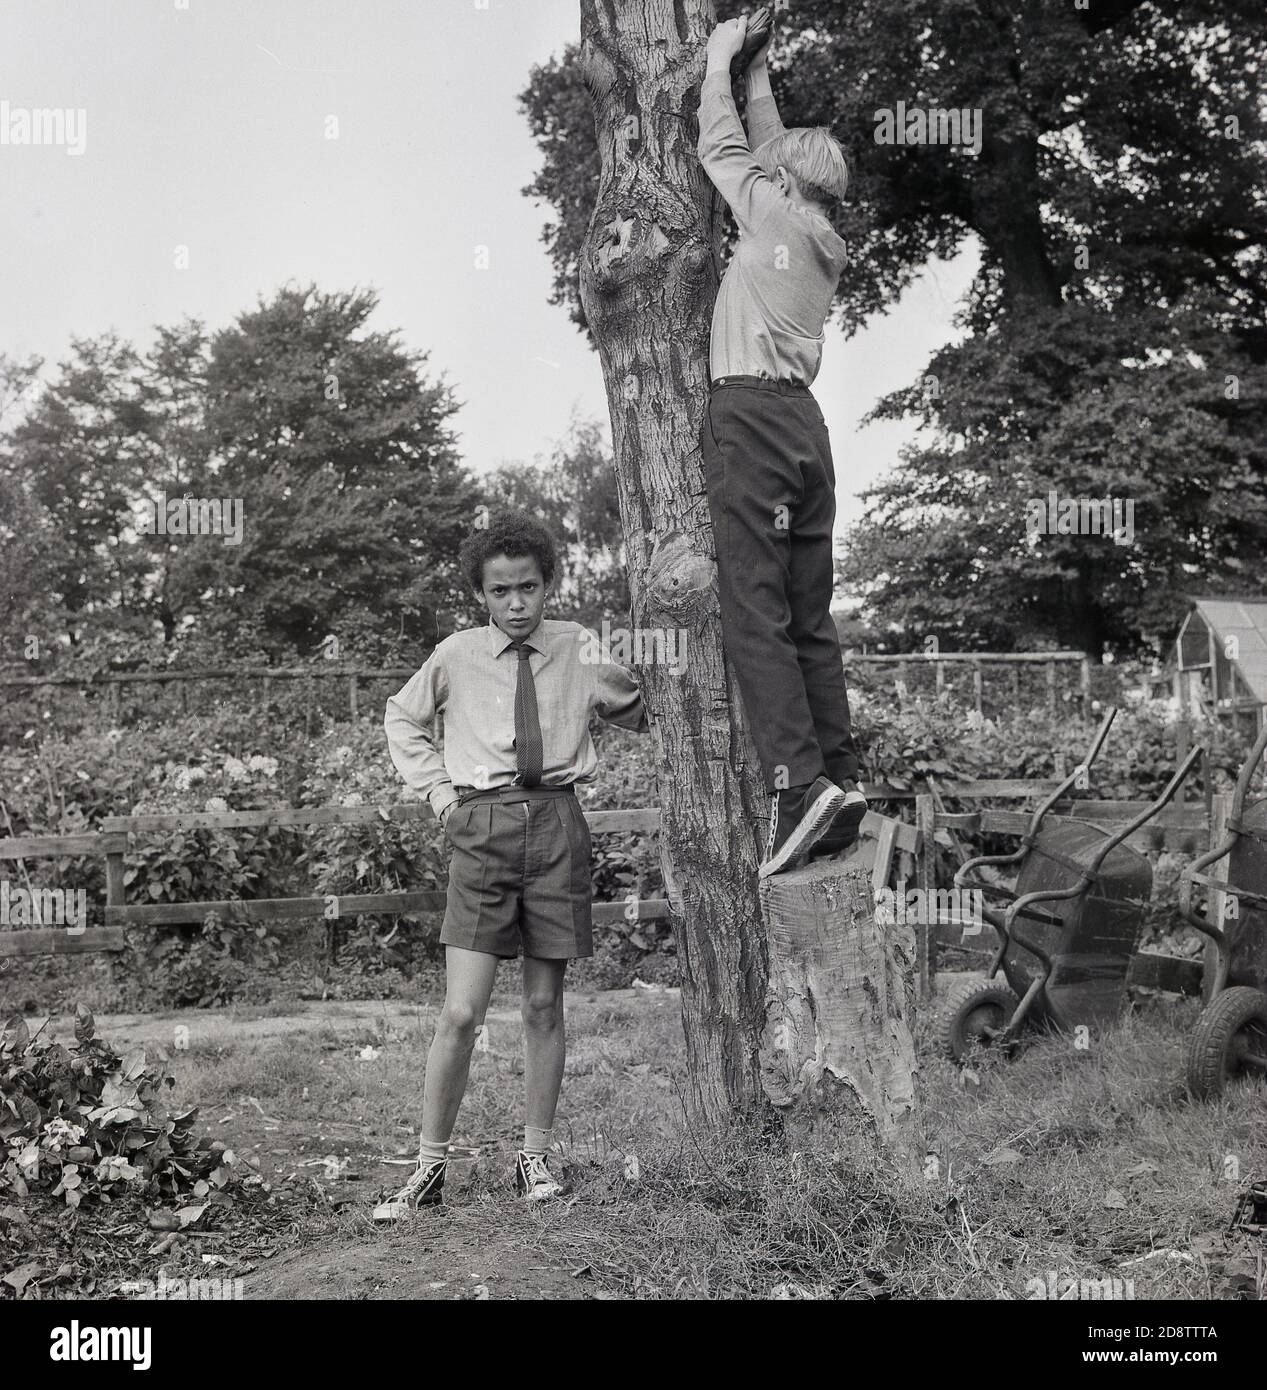 Dans les années 1960, deux écoliers d'un État intérieur de Londres, des garçons pensionnaires dans un jardin extérieur et une zone d'activités, avec l'un des garçons essayant de monter un arbre découpé. Banque D'Images